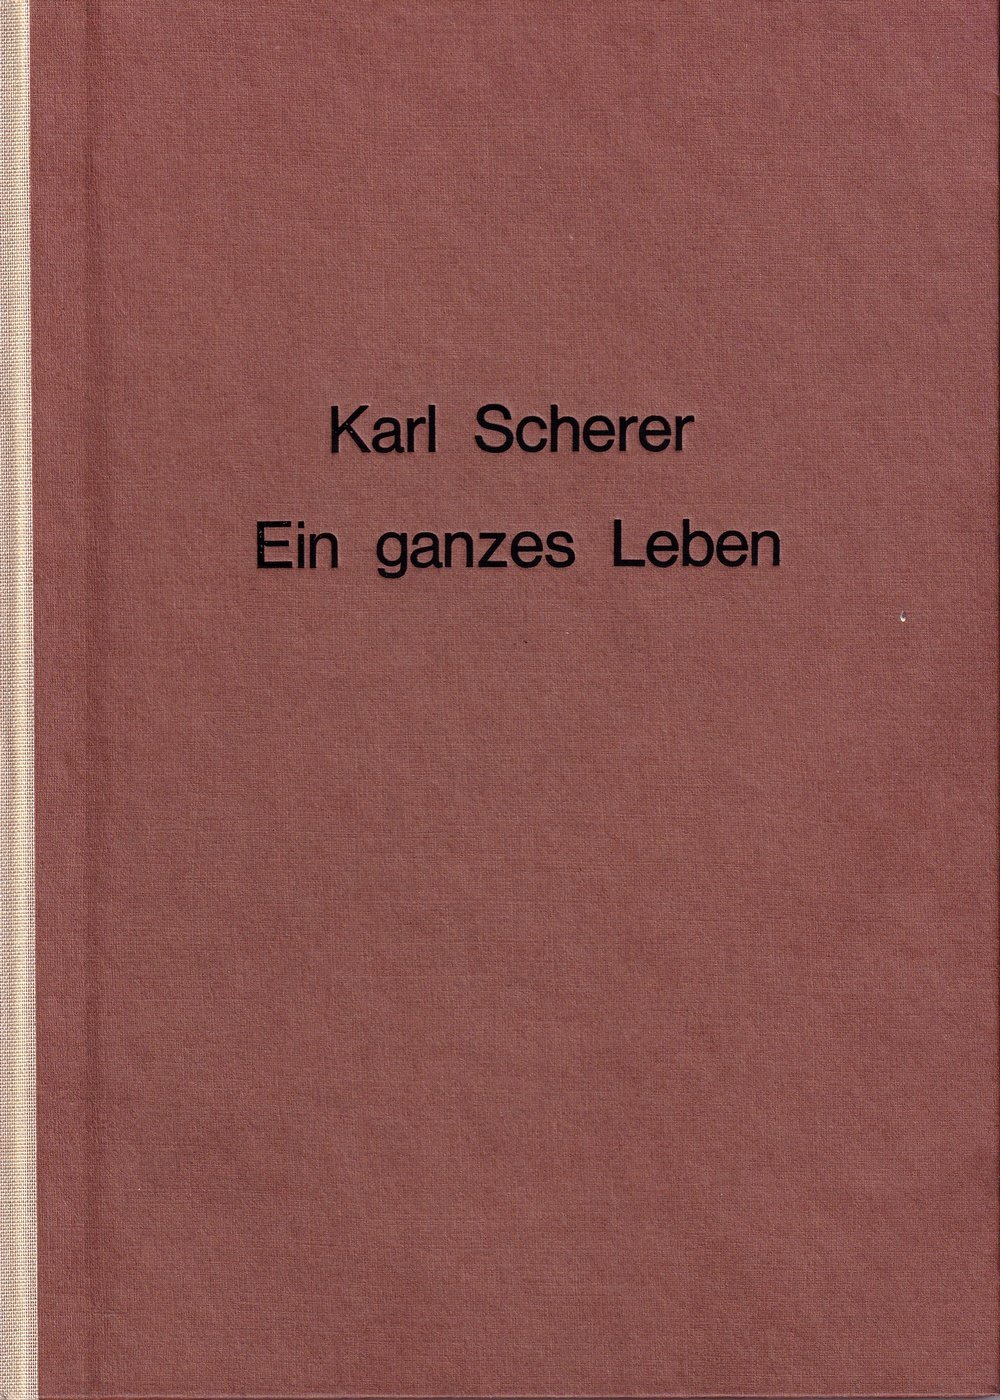 Karl Scherer - Ein ganzes Leben (Kulturverein Guntersblum CC BY-NC-SA)